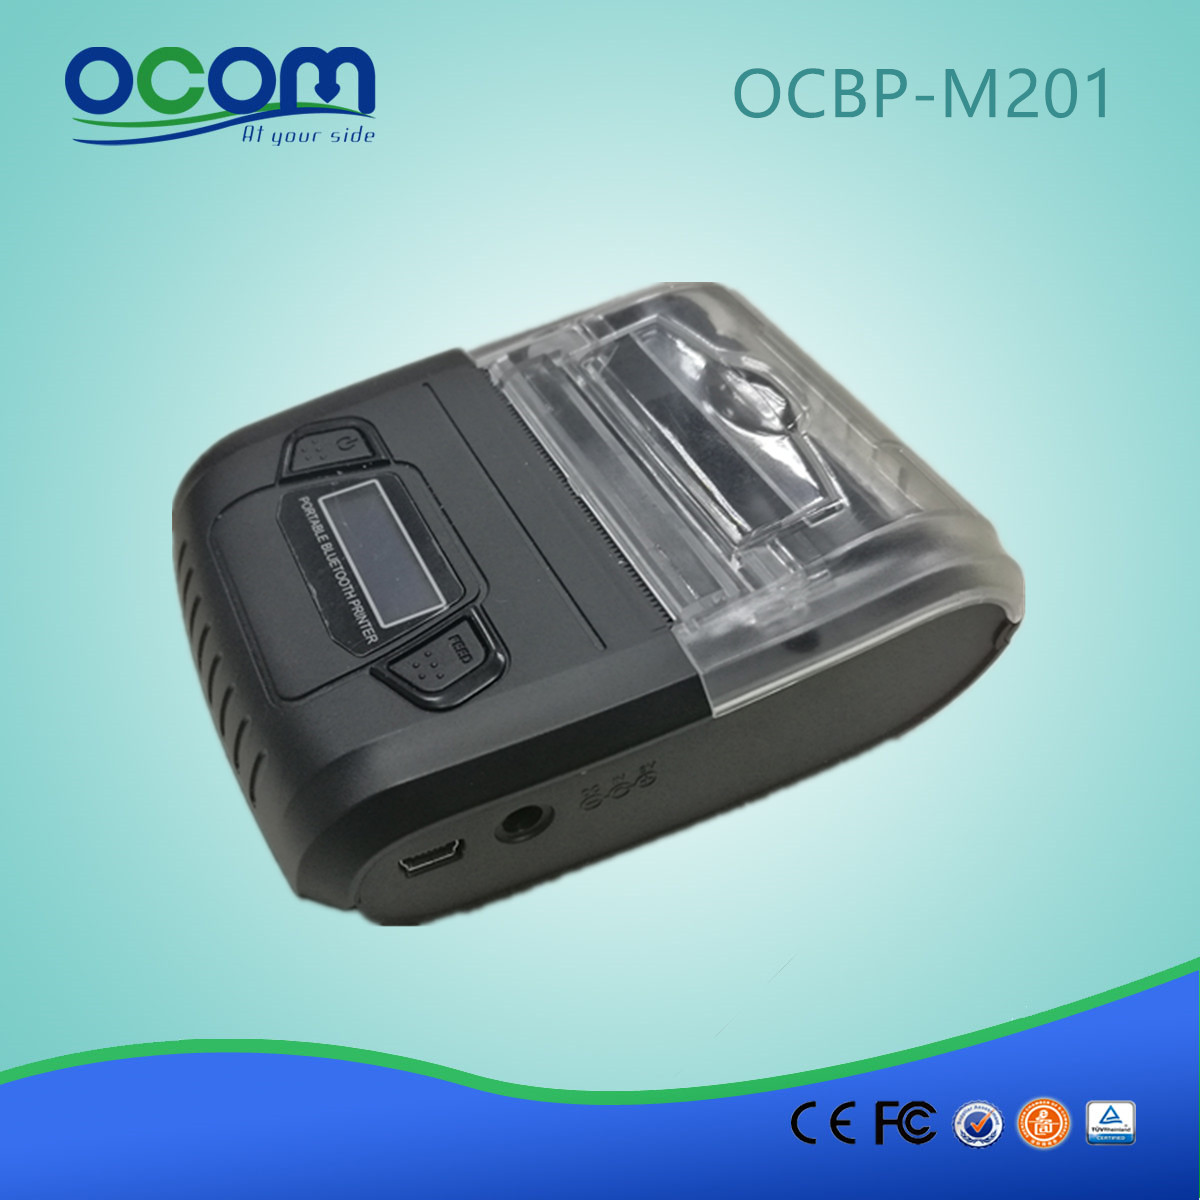 OCPP M201 便携式蓝牙条码标签打印标签打印机